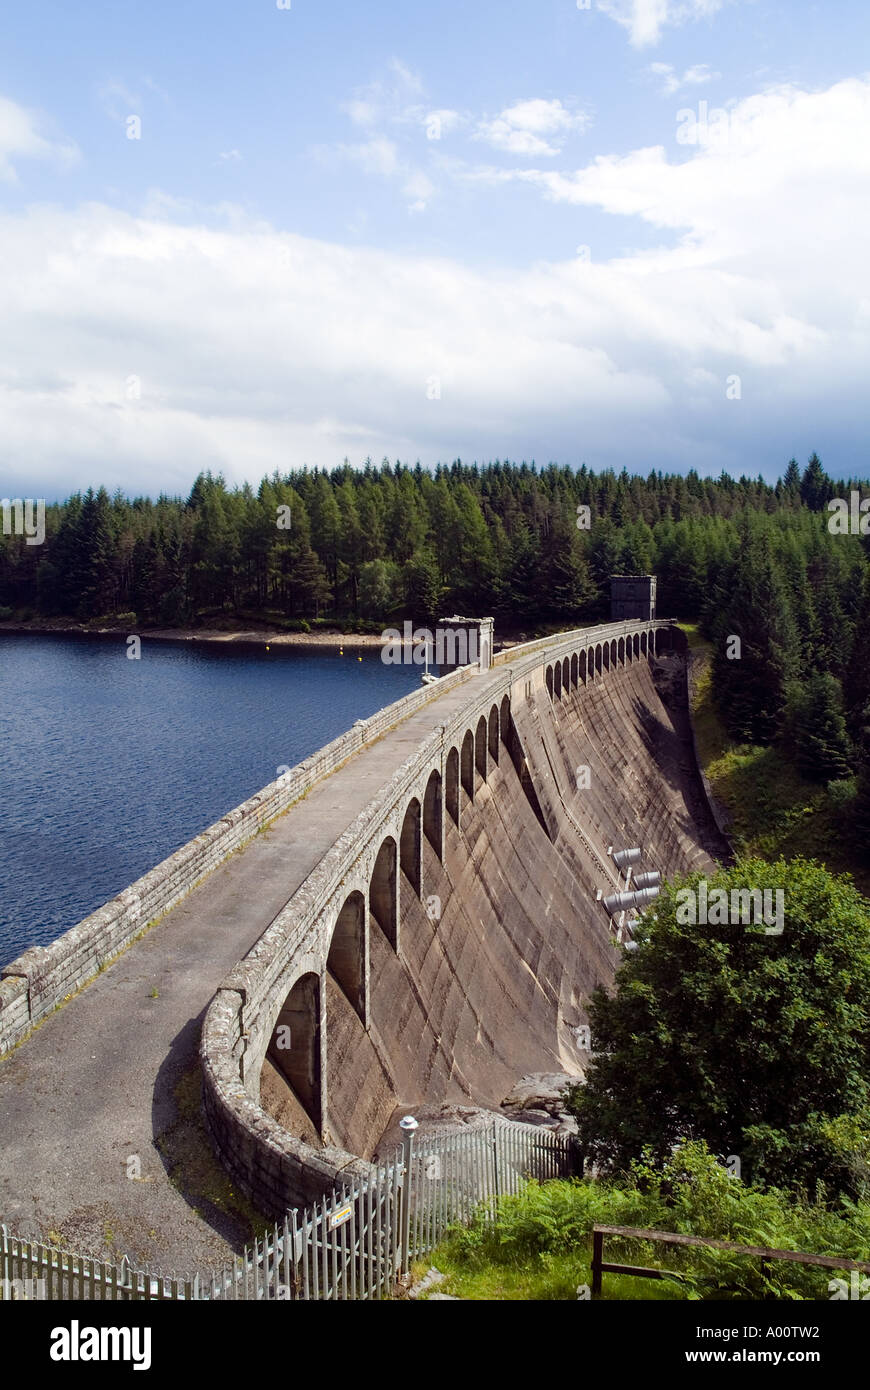 barrage dh Laggan LOCH LAGGAN INVERNESSSHIRE Scotland réservoir de barrage hydroélectrique de la fonderie d'aluminium source d'énergie de la rivière Spean Hydropower uk Banque D'Images